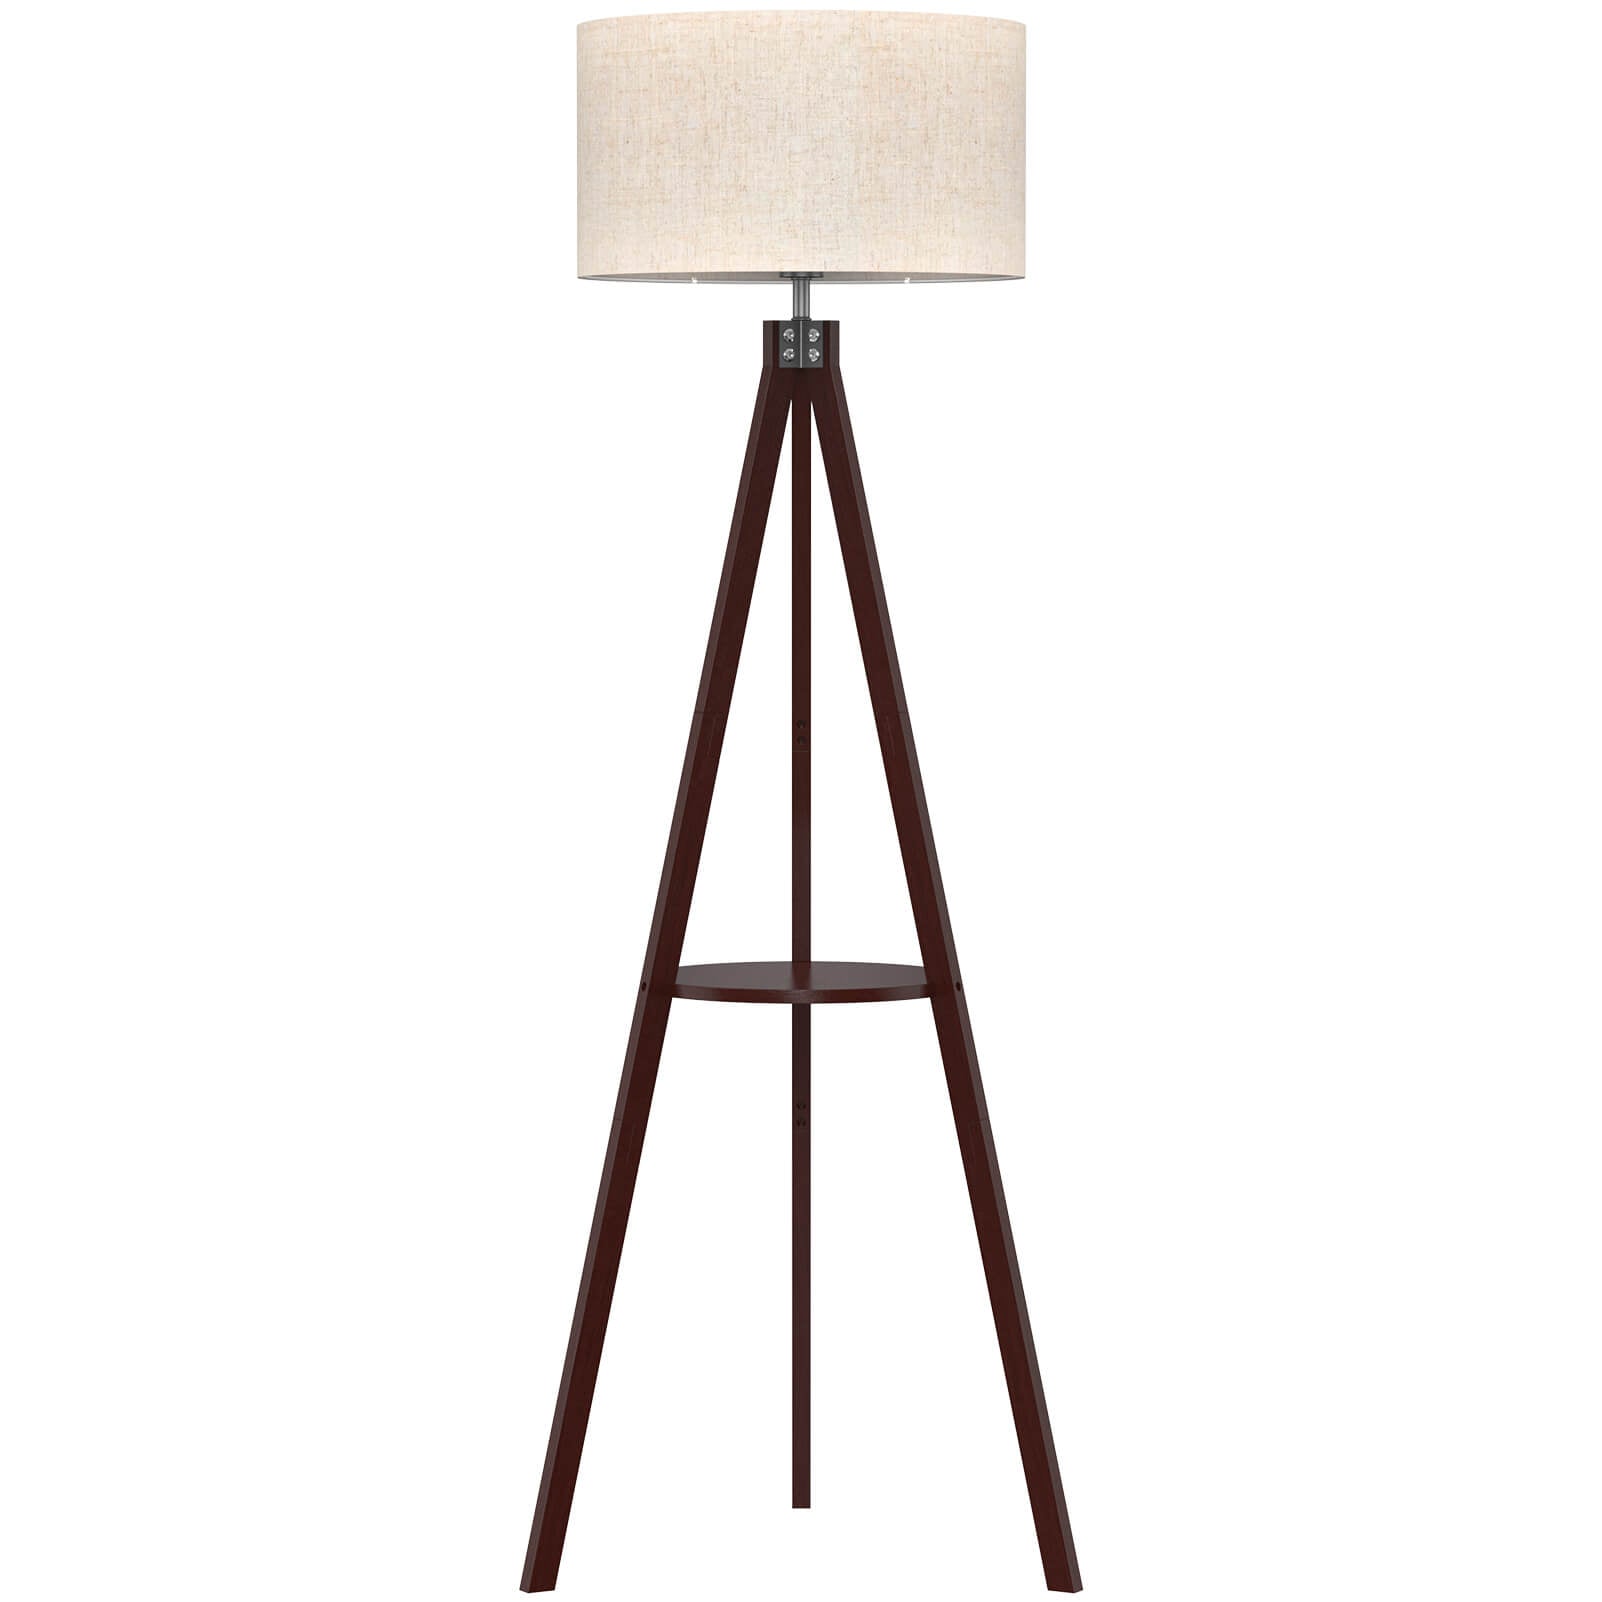 Wooden Floor Lamp with Shelf